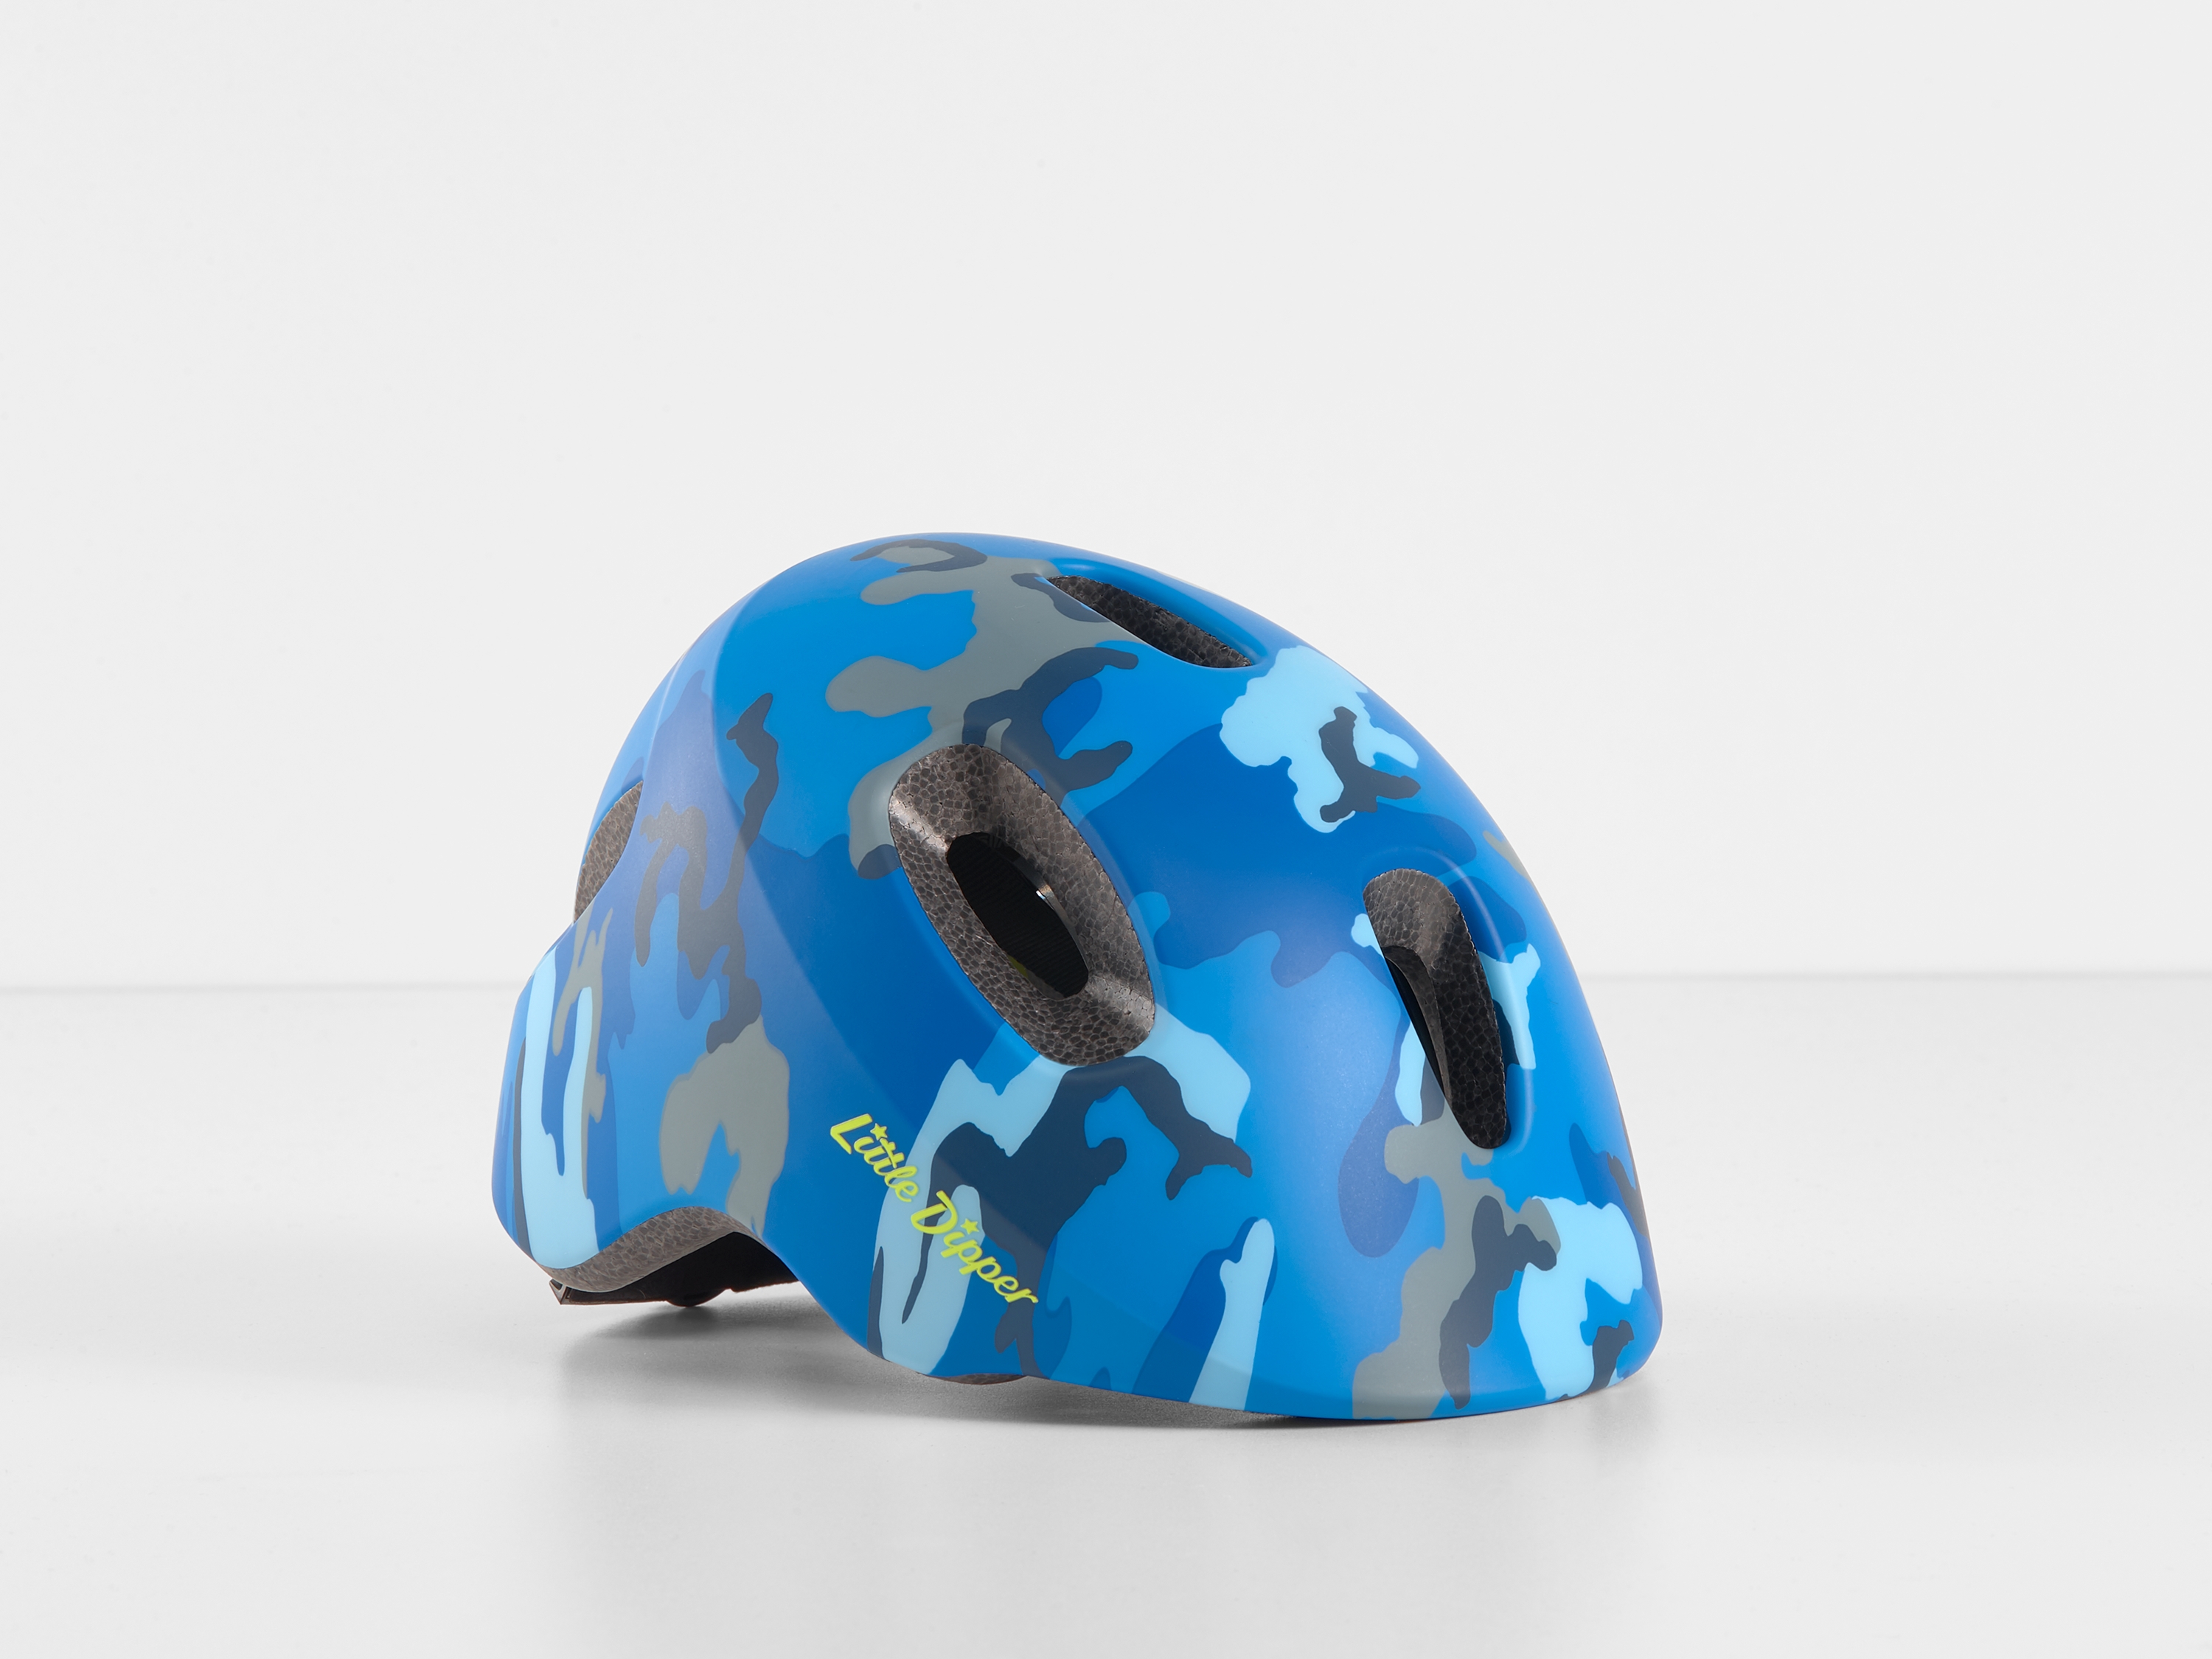 trek bicycle helmets